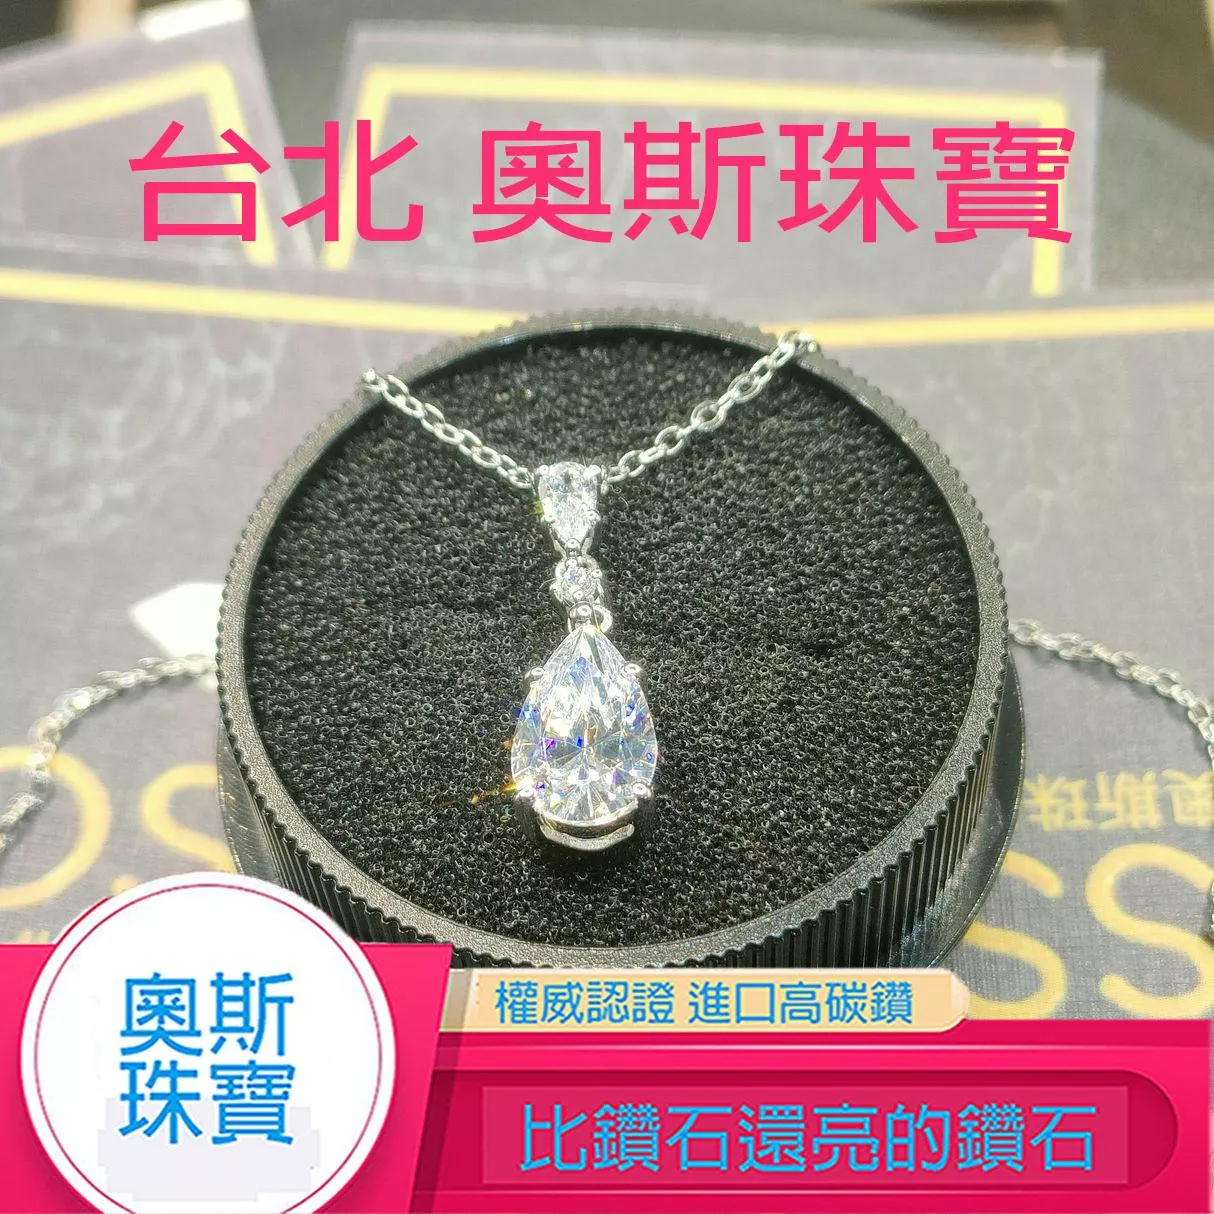 高碳鑽 3-5克拉水滴鑽項鍊 台北門市 客製化訂製白金